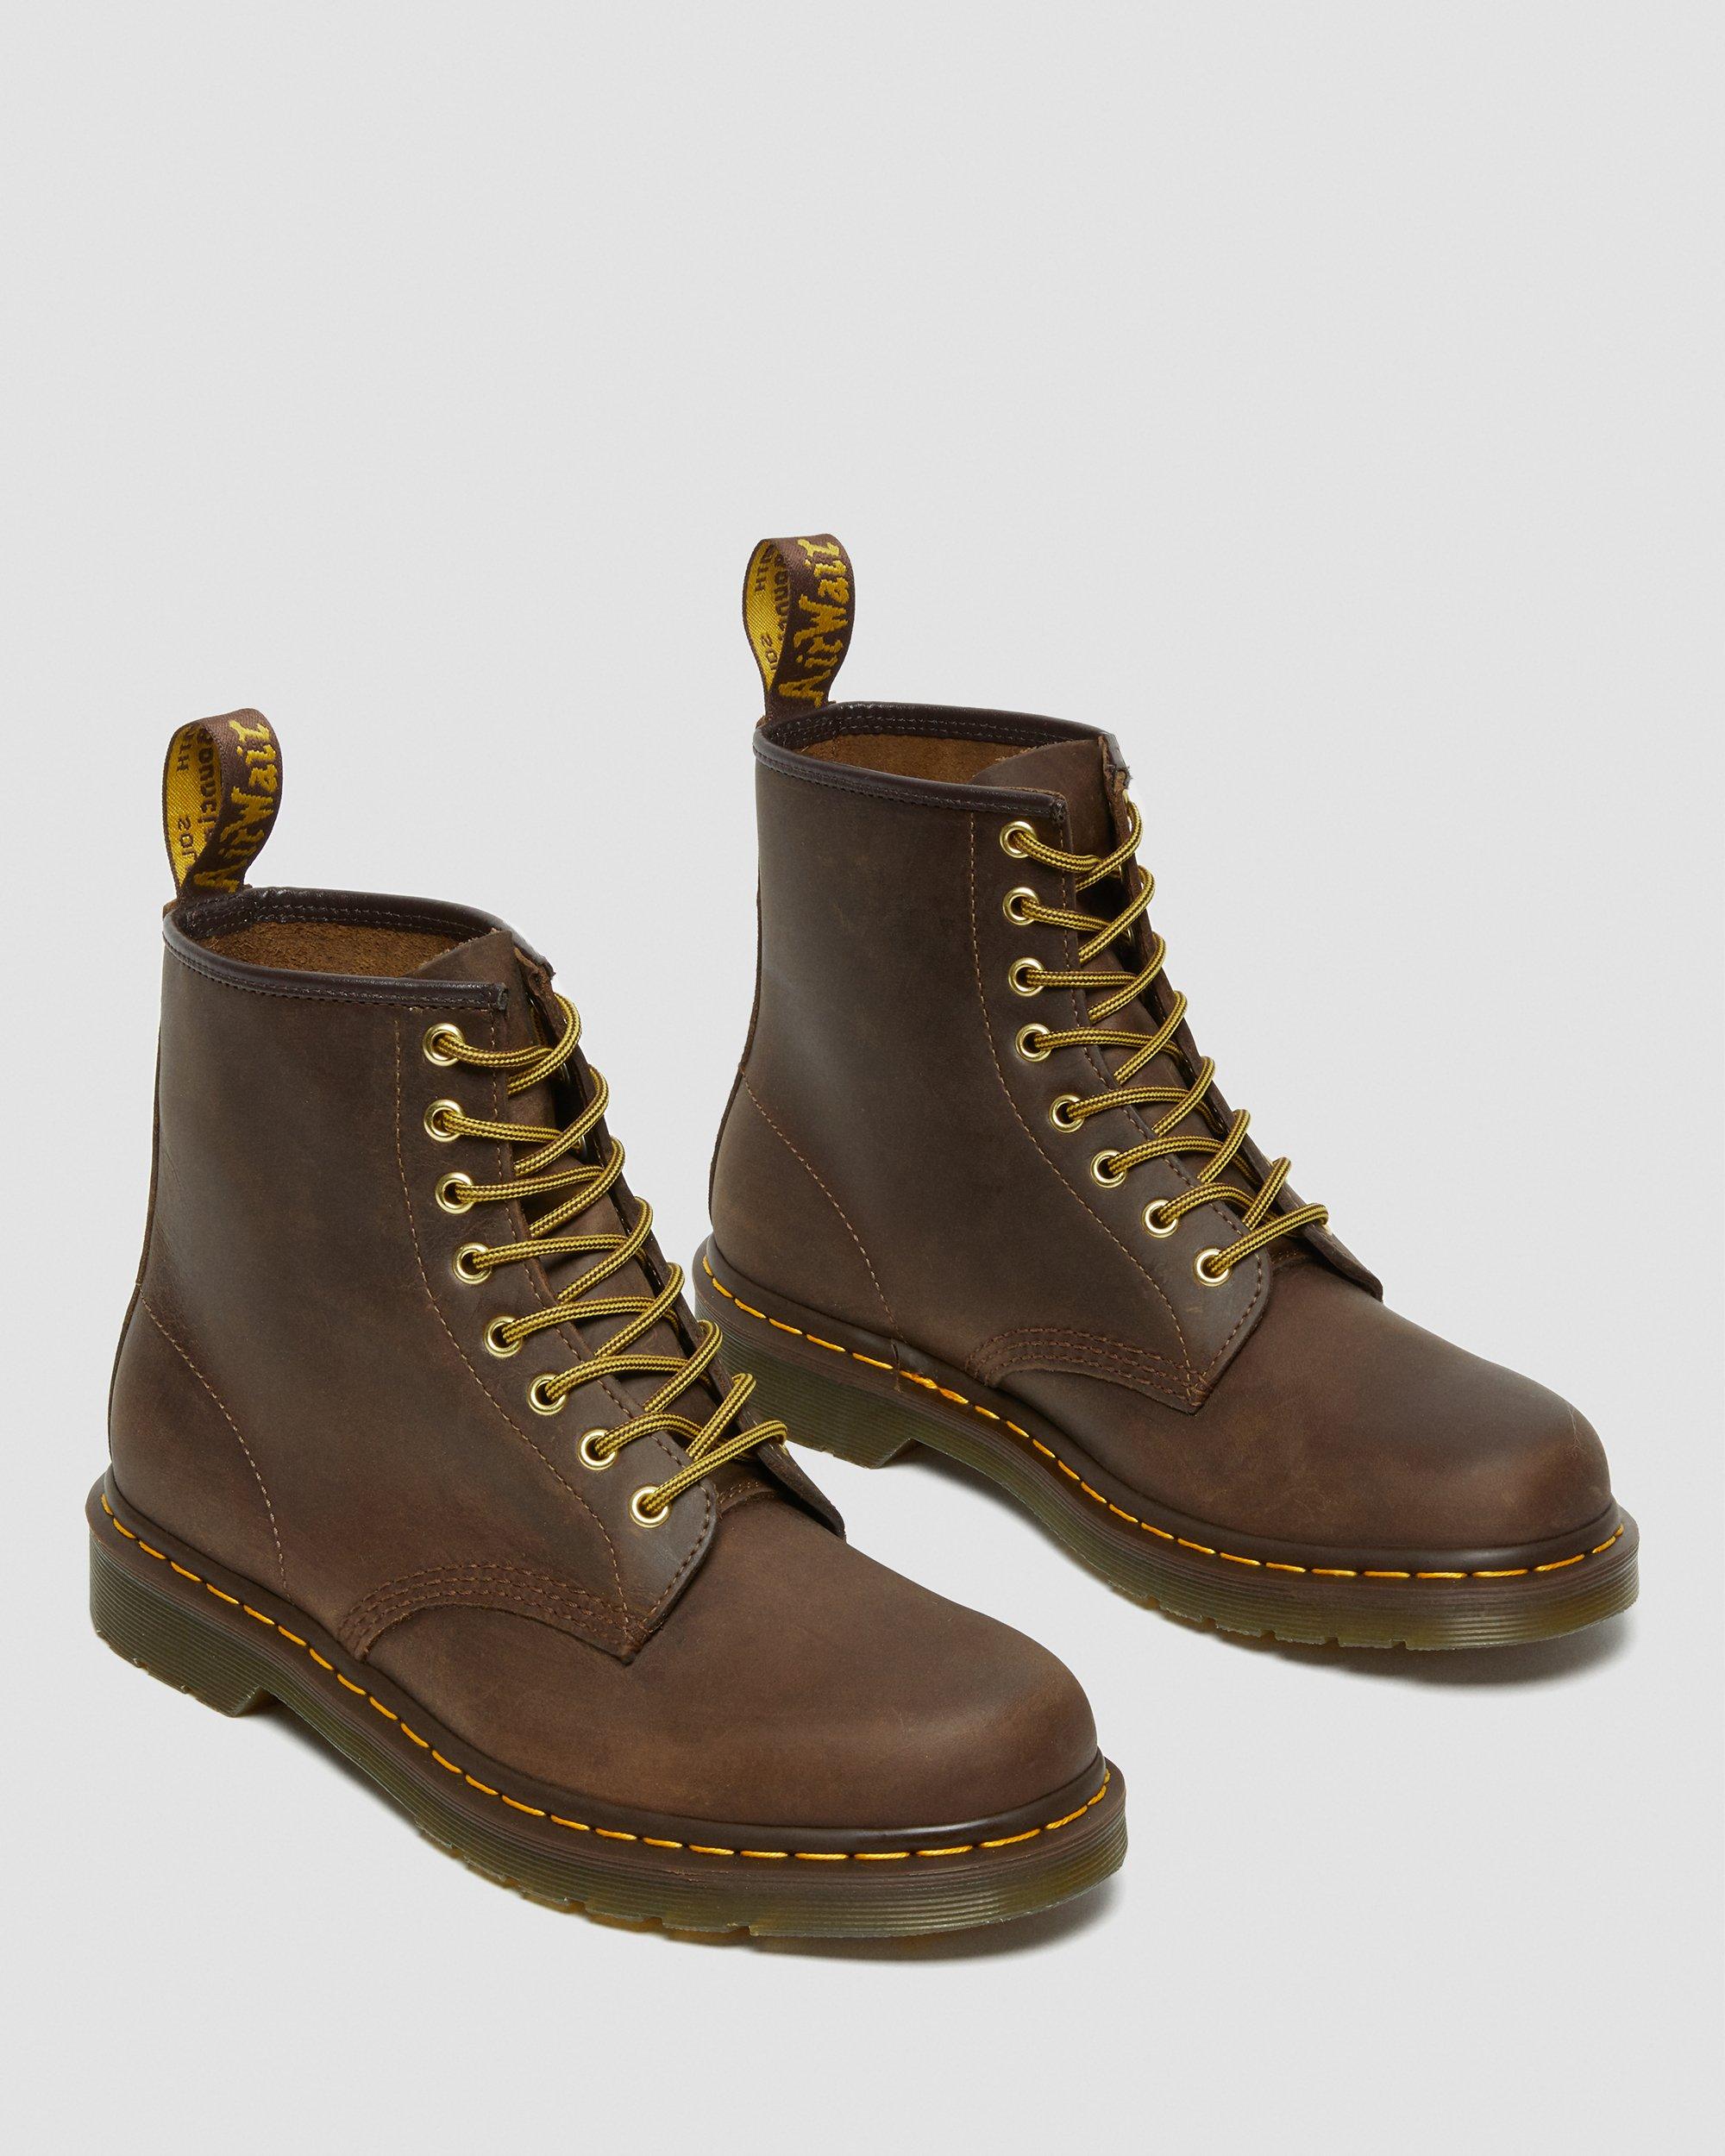 Dr Martens 1460 Bex 8-Eye Boots in Dark Brown